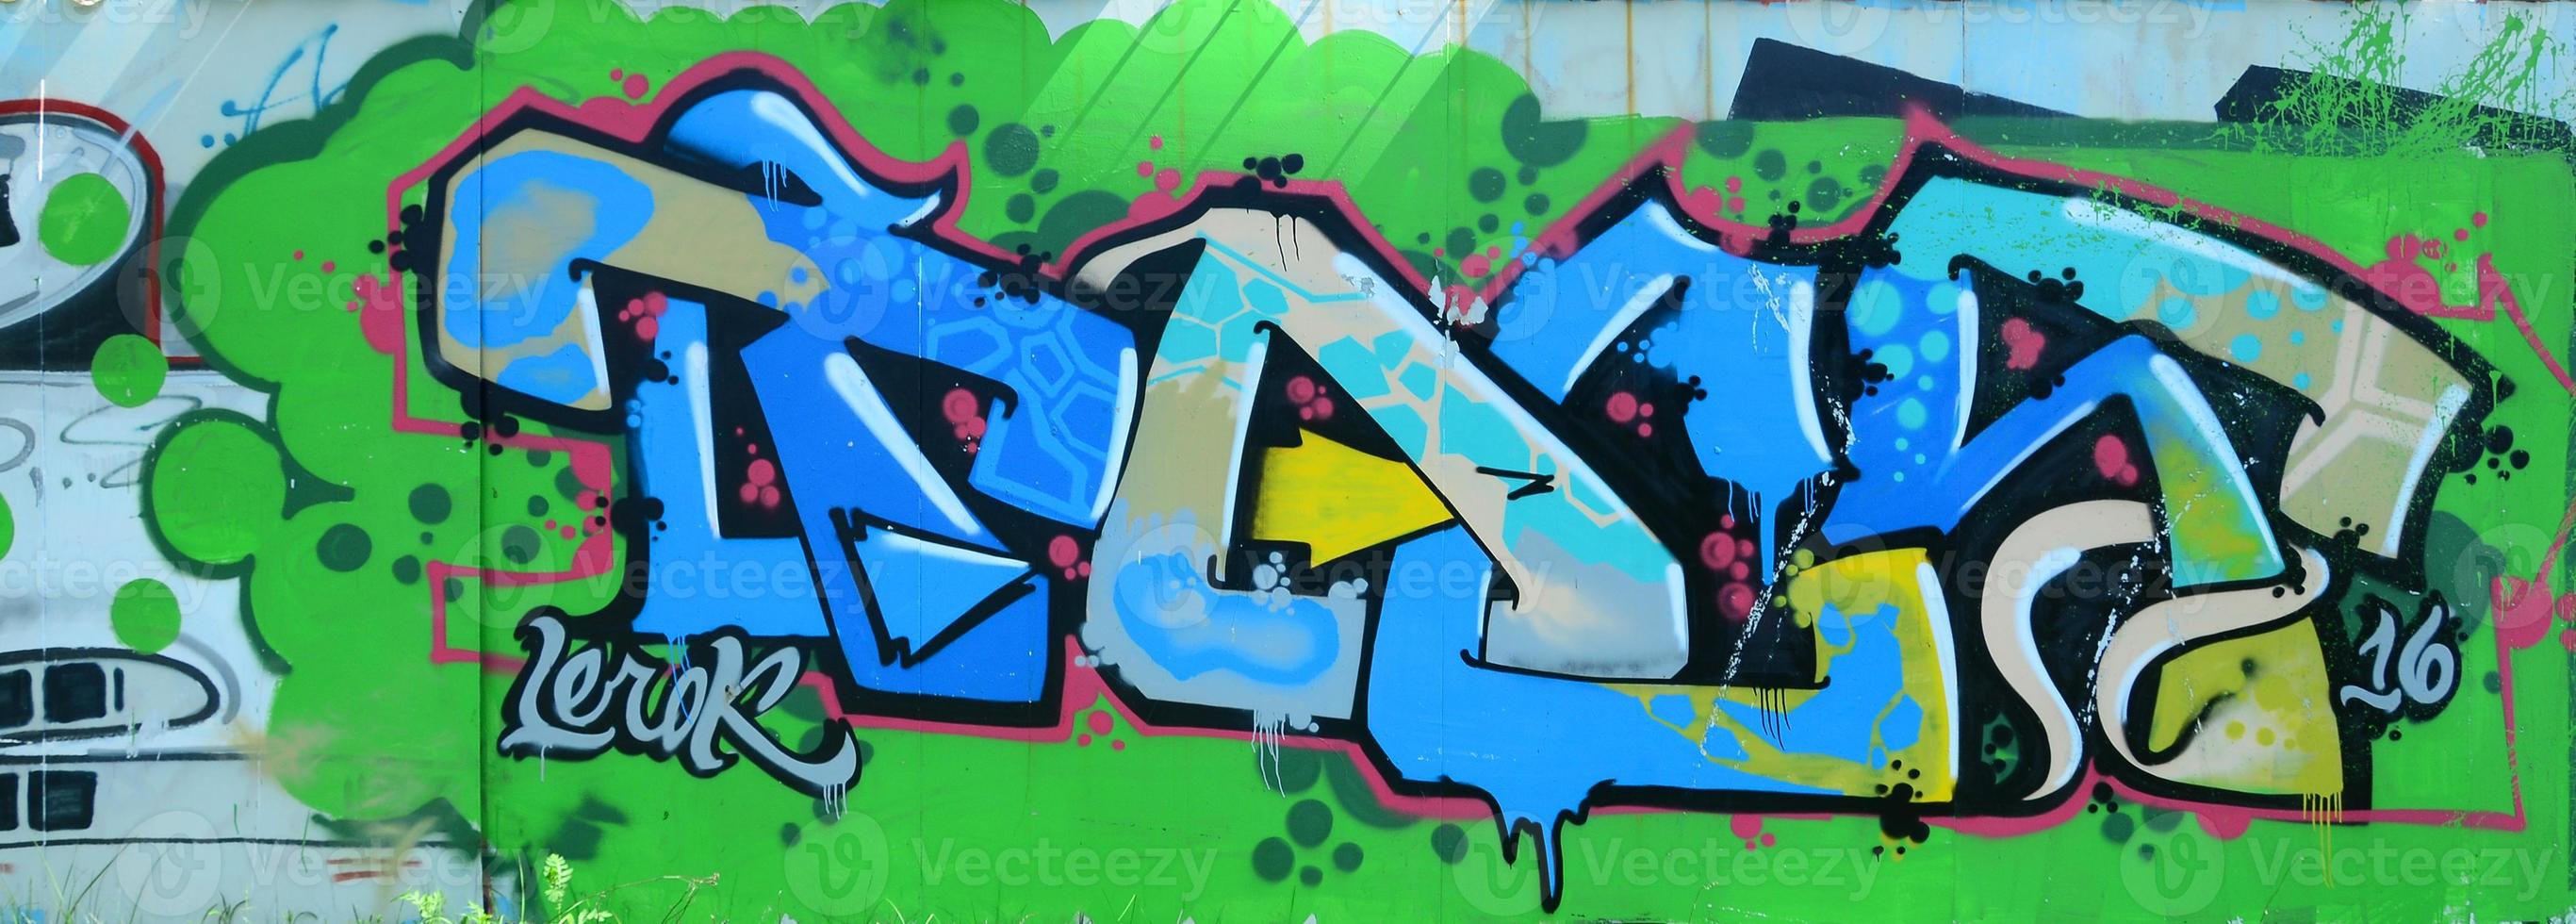 arte callejero. imagen de fondo abstracta de una pintura de graffiti completamente completada en tonos verdes y azules foto